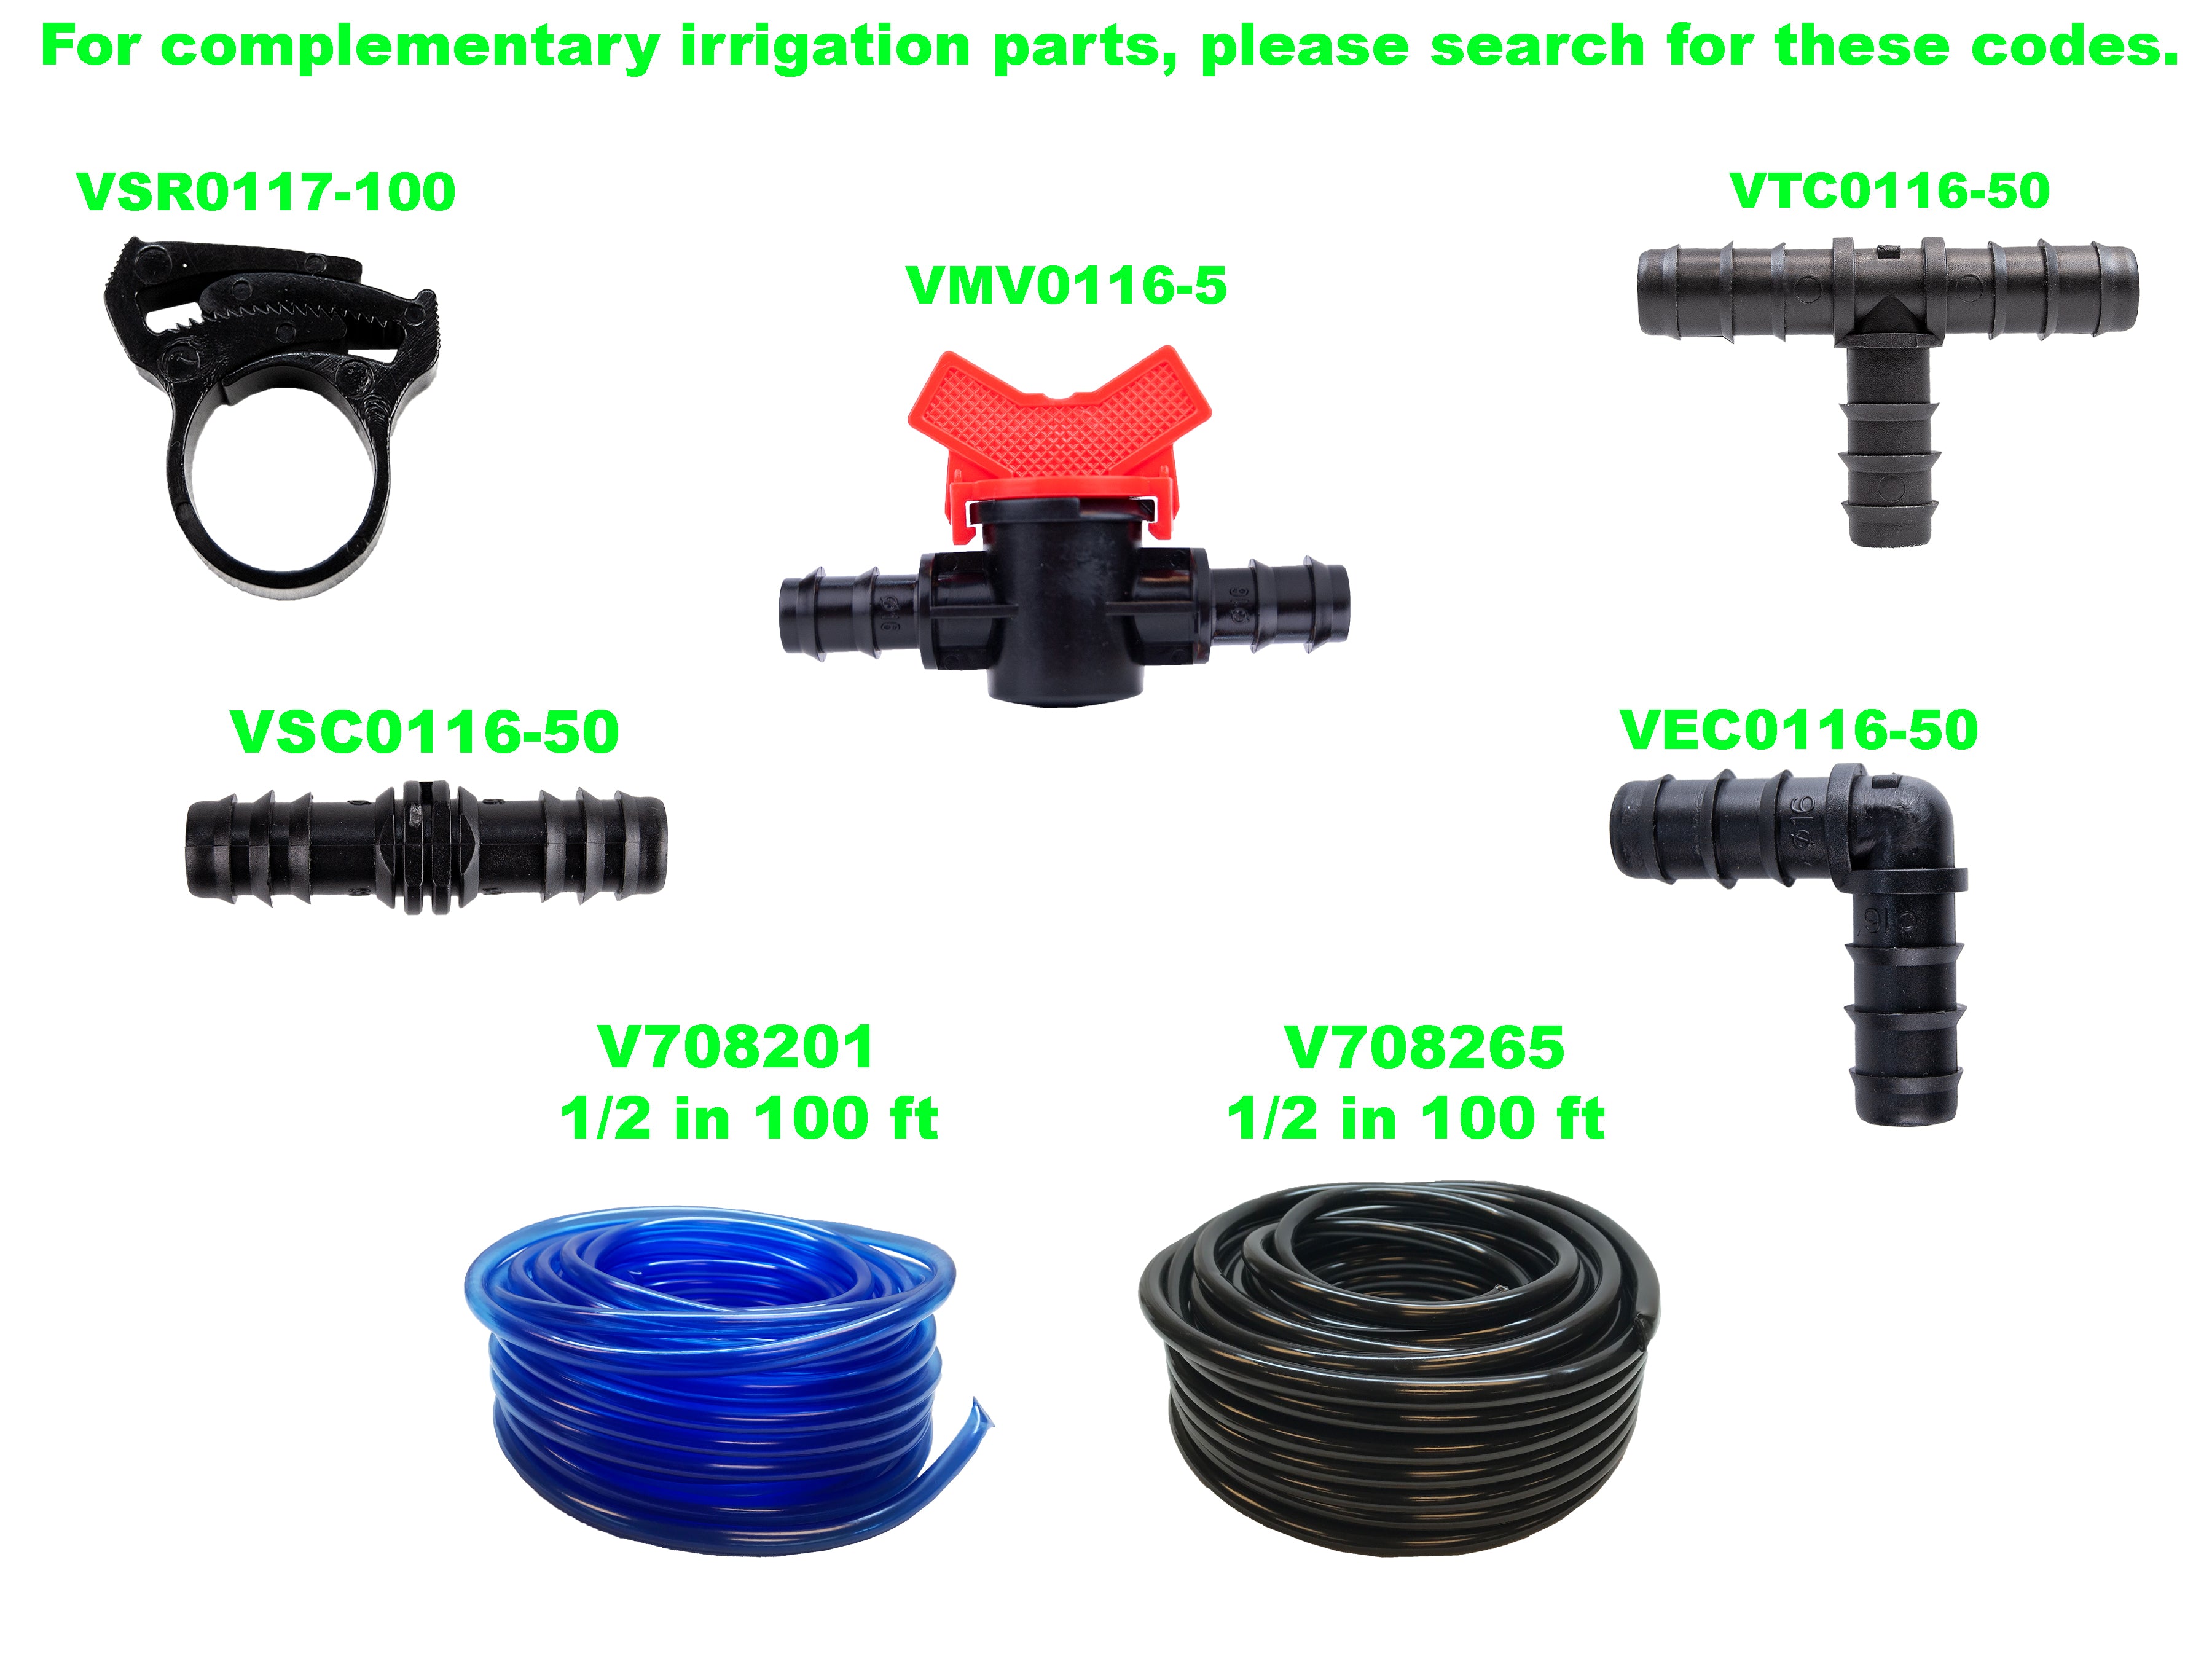 Viagrow Vinyl Multi-Purpose Irrigation Tubing (100ft, 1/2 ID-5/8 OD), Black